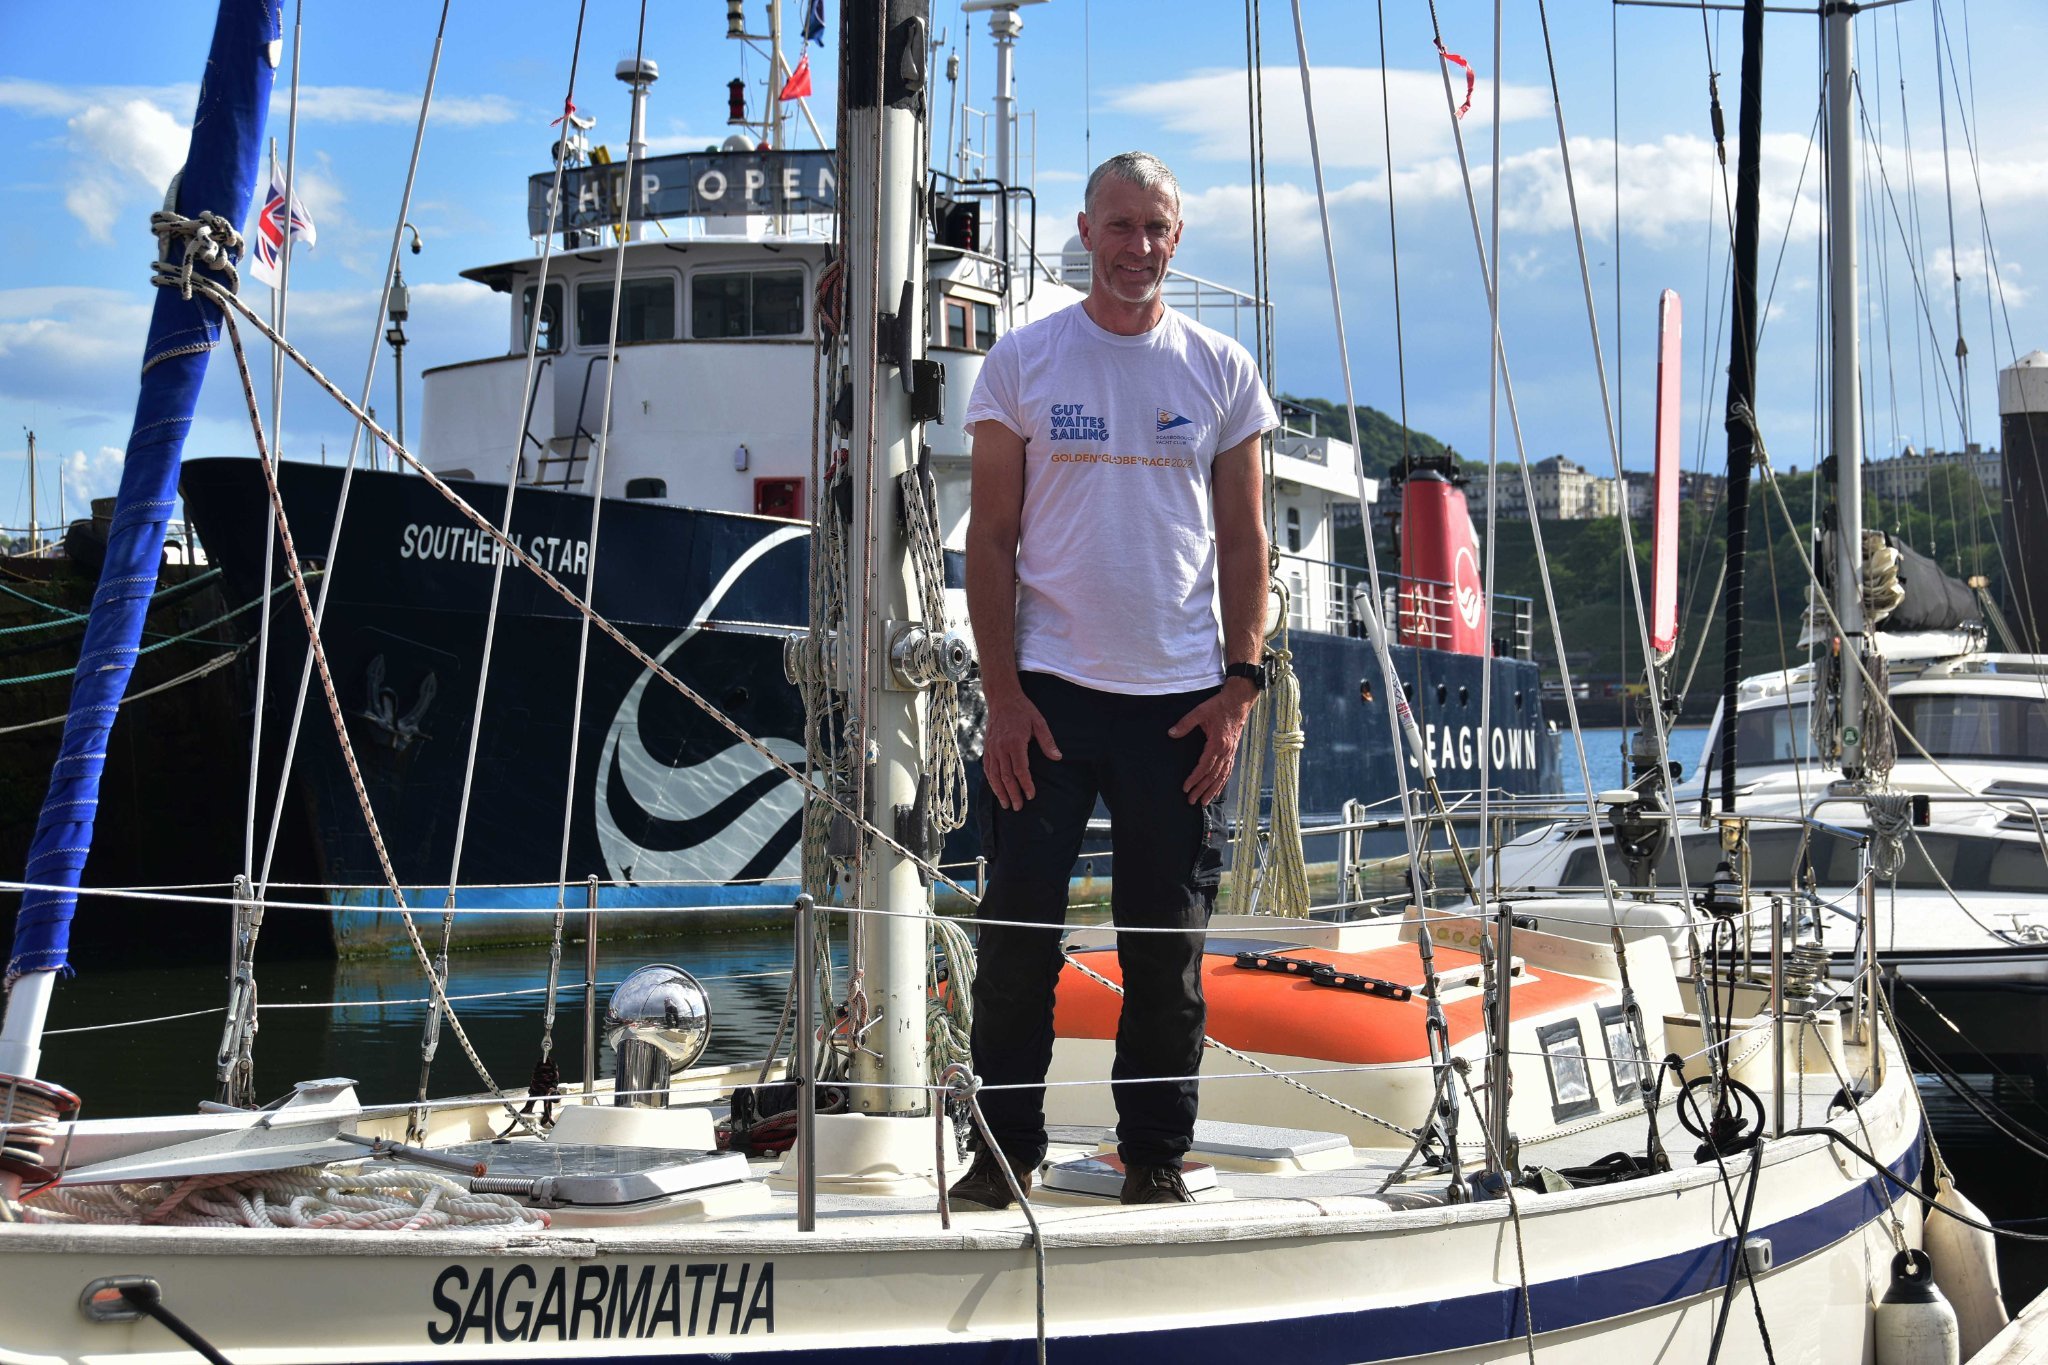 Guy Waites pictured aboard his Golden Globe Race yacht Sagarmatha.